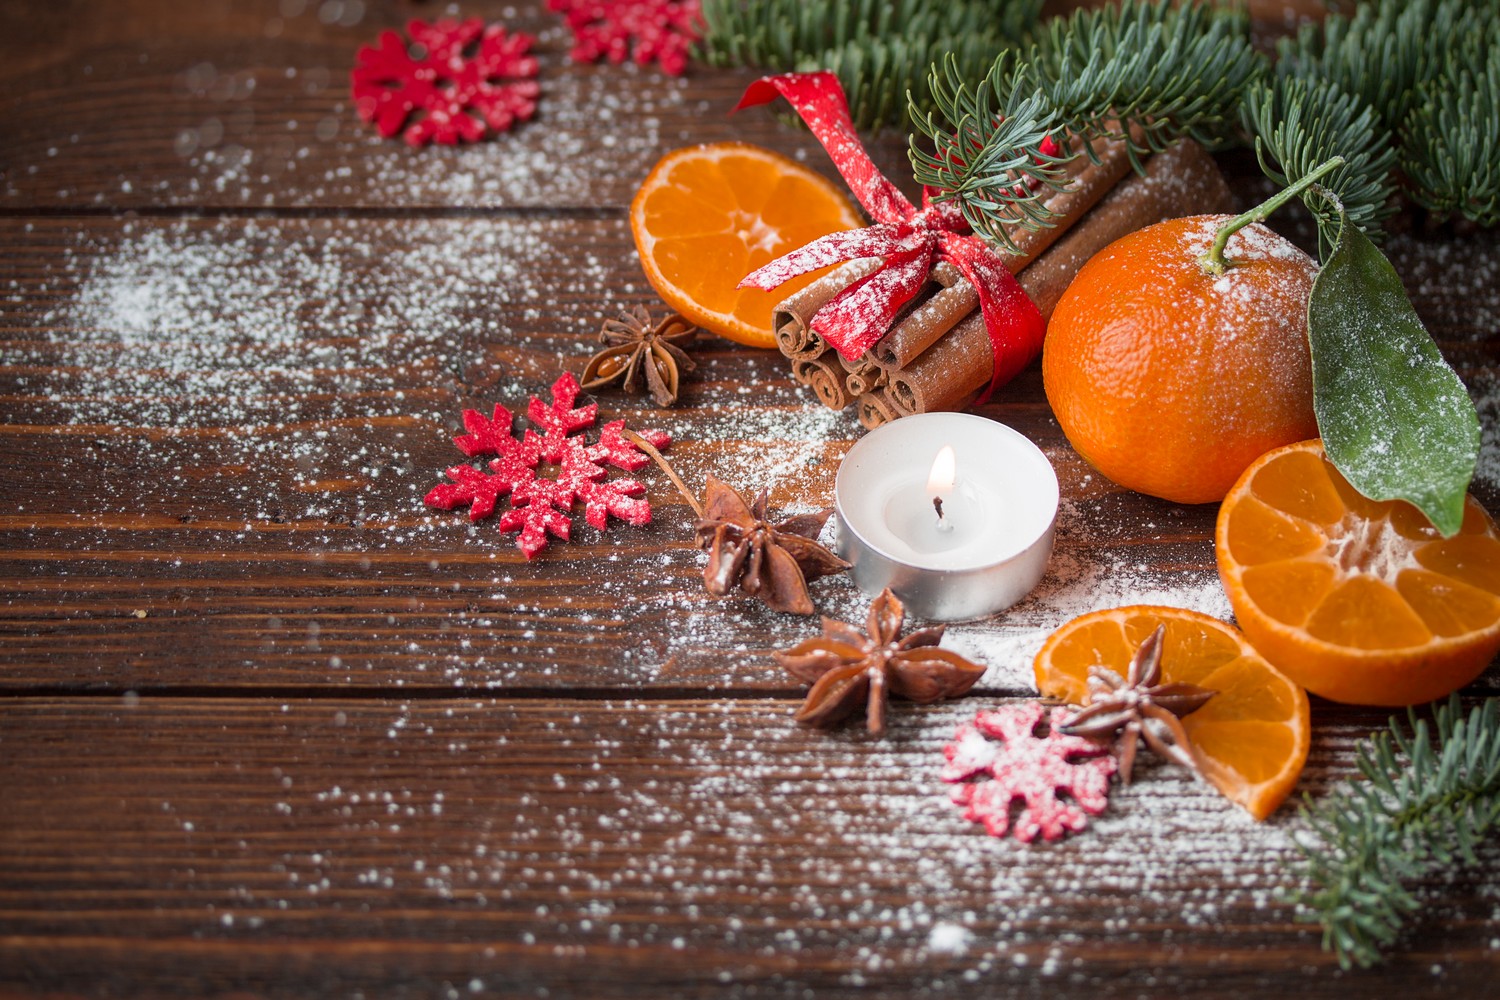 Pomarańcza i przyprawy korzenne na tle zimowych ozdób